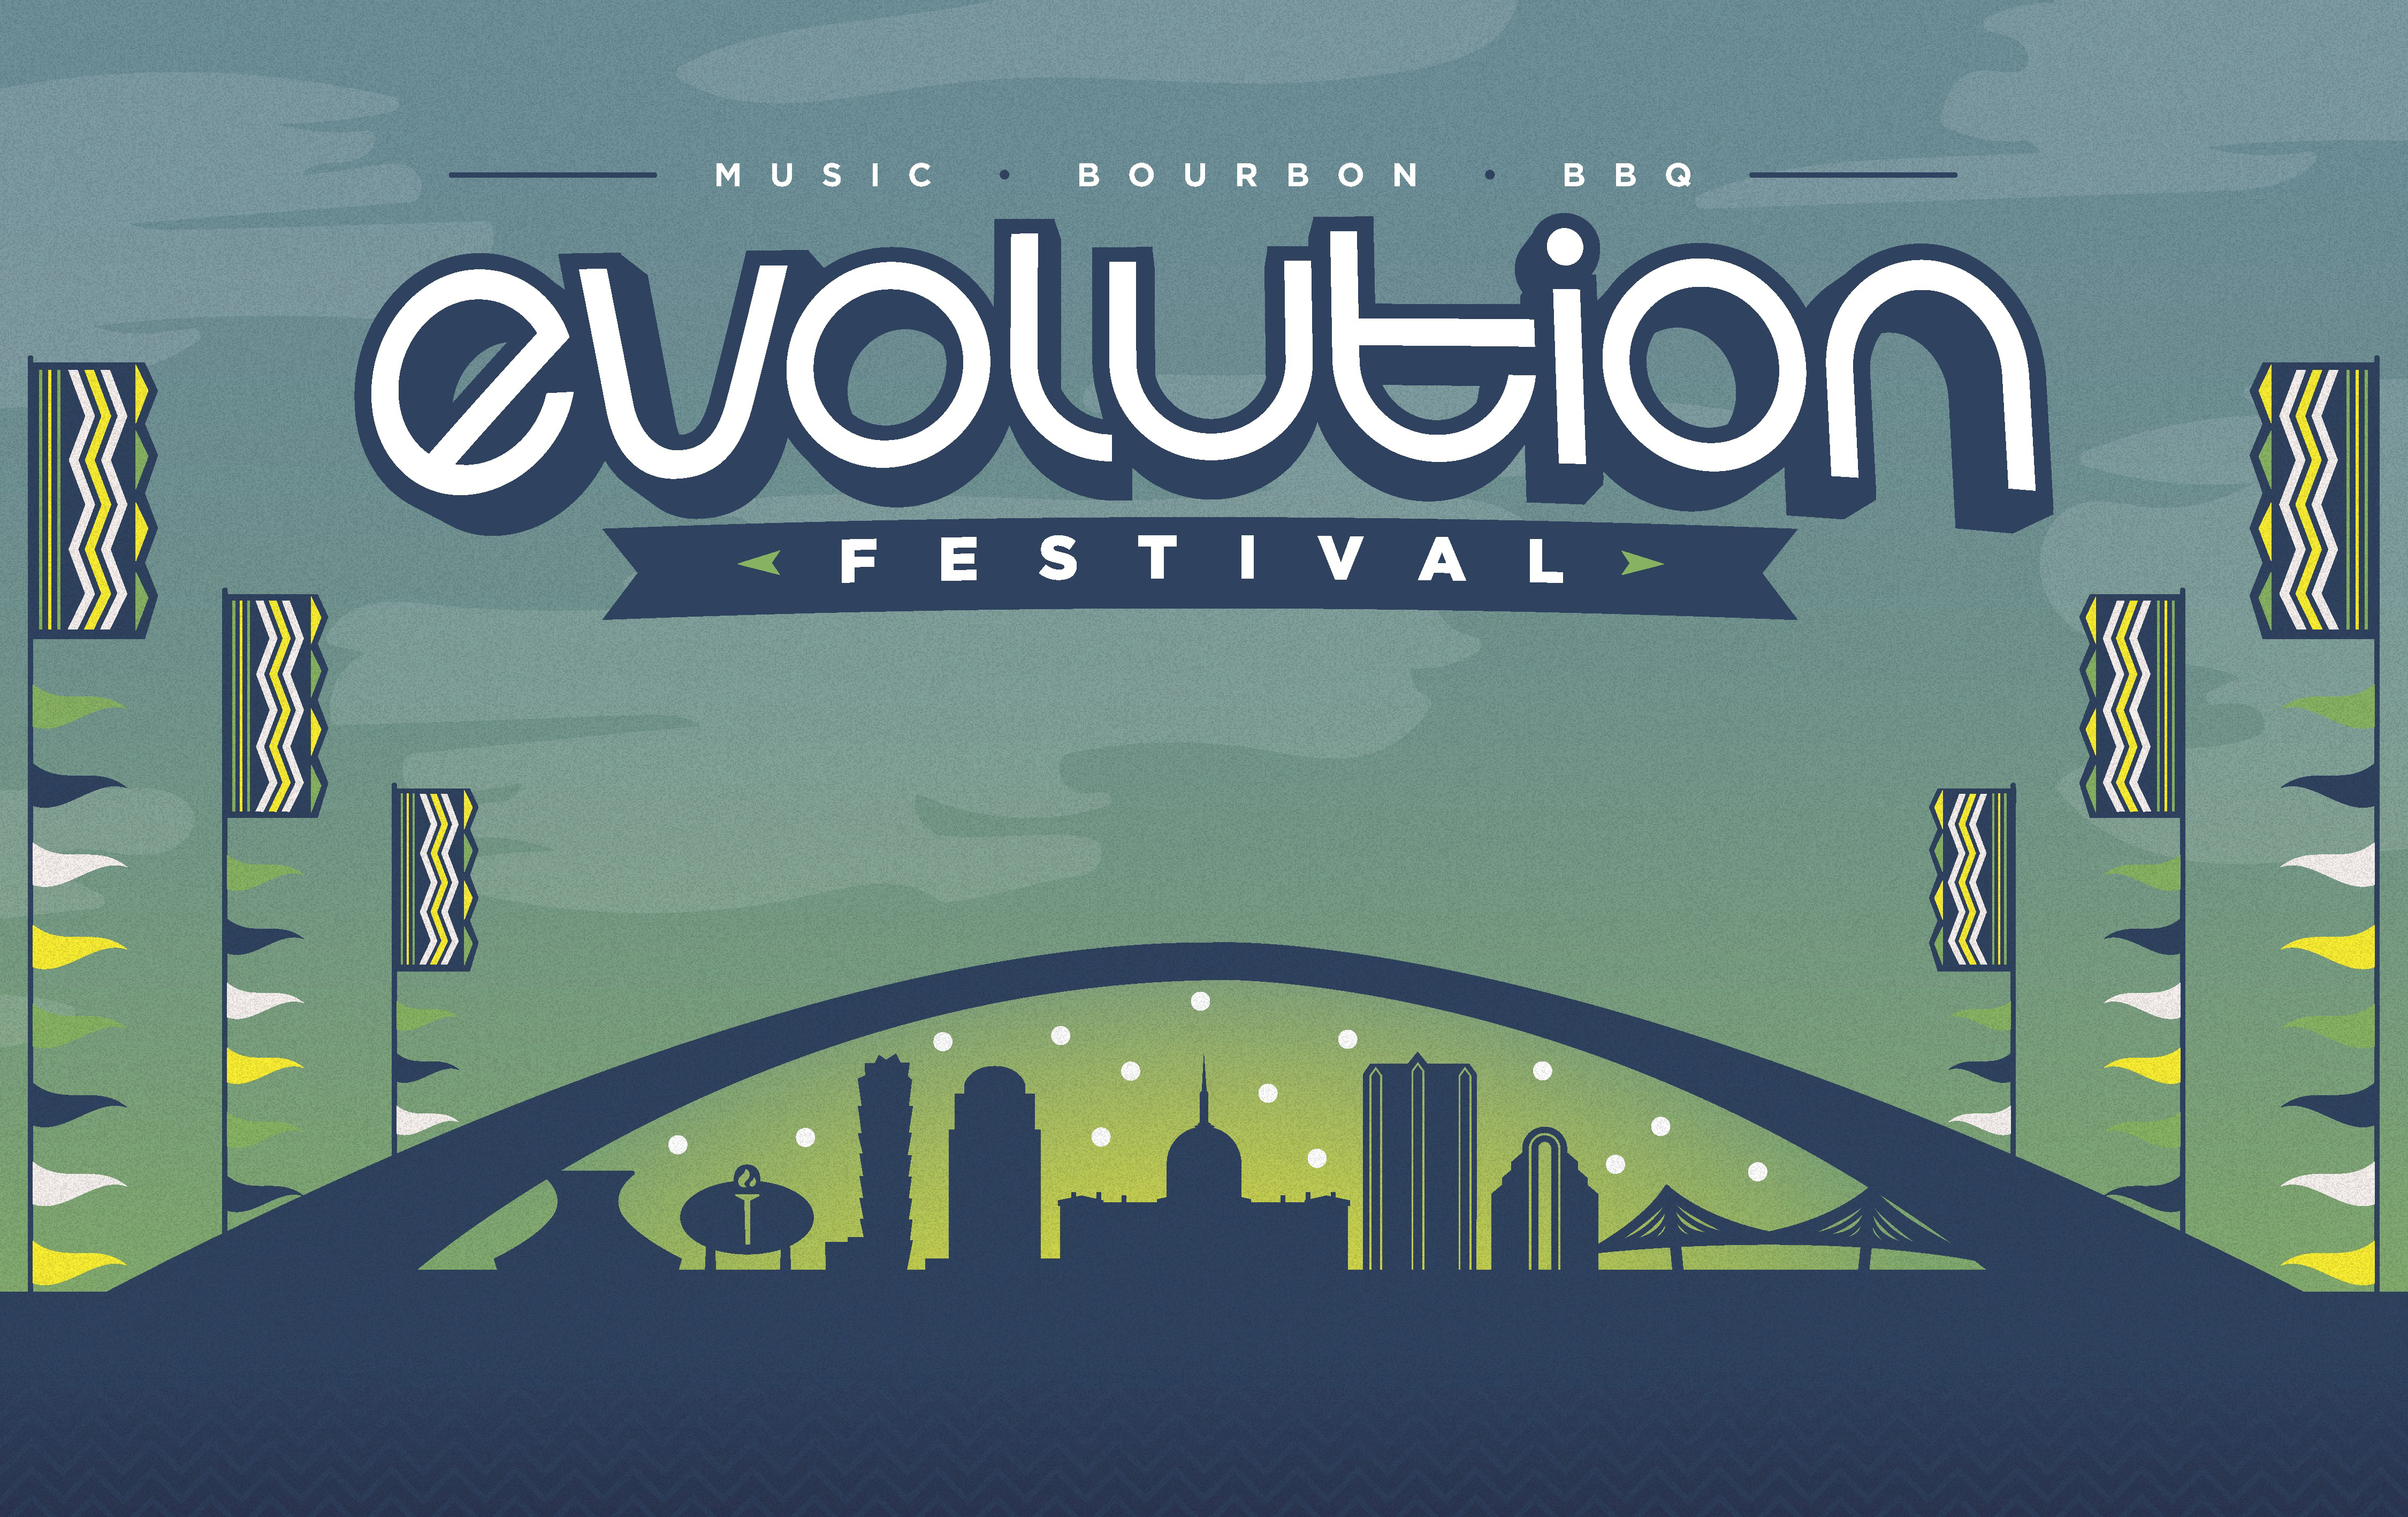 Evolution Festival